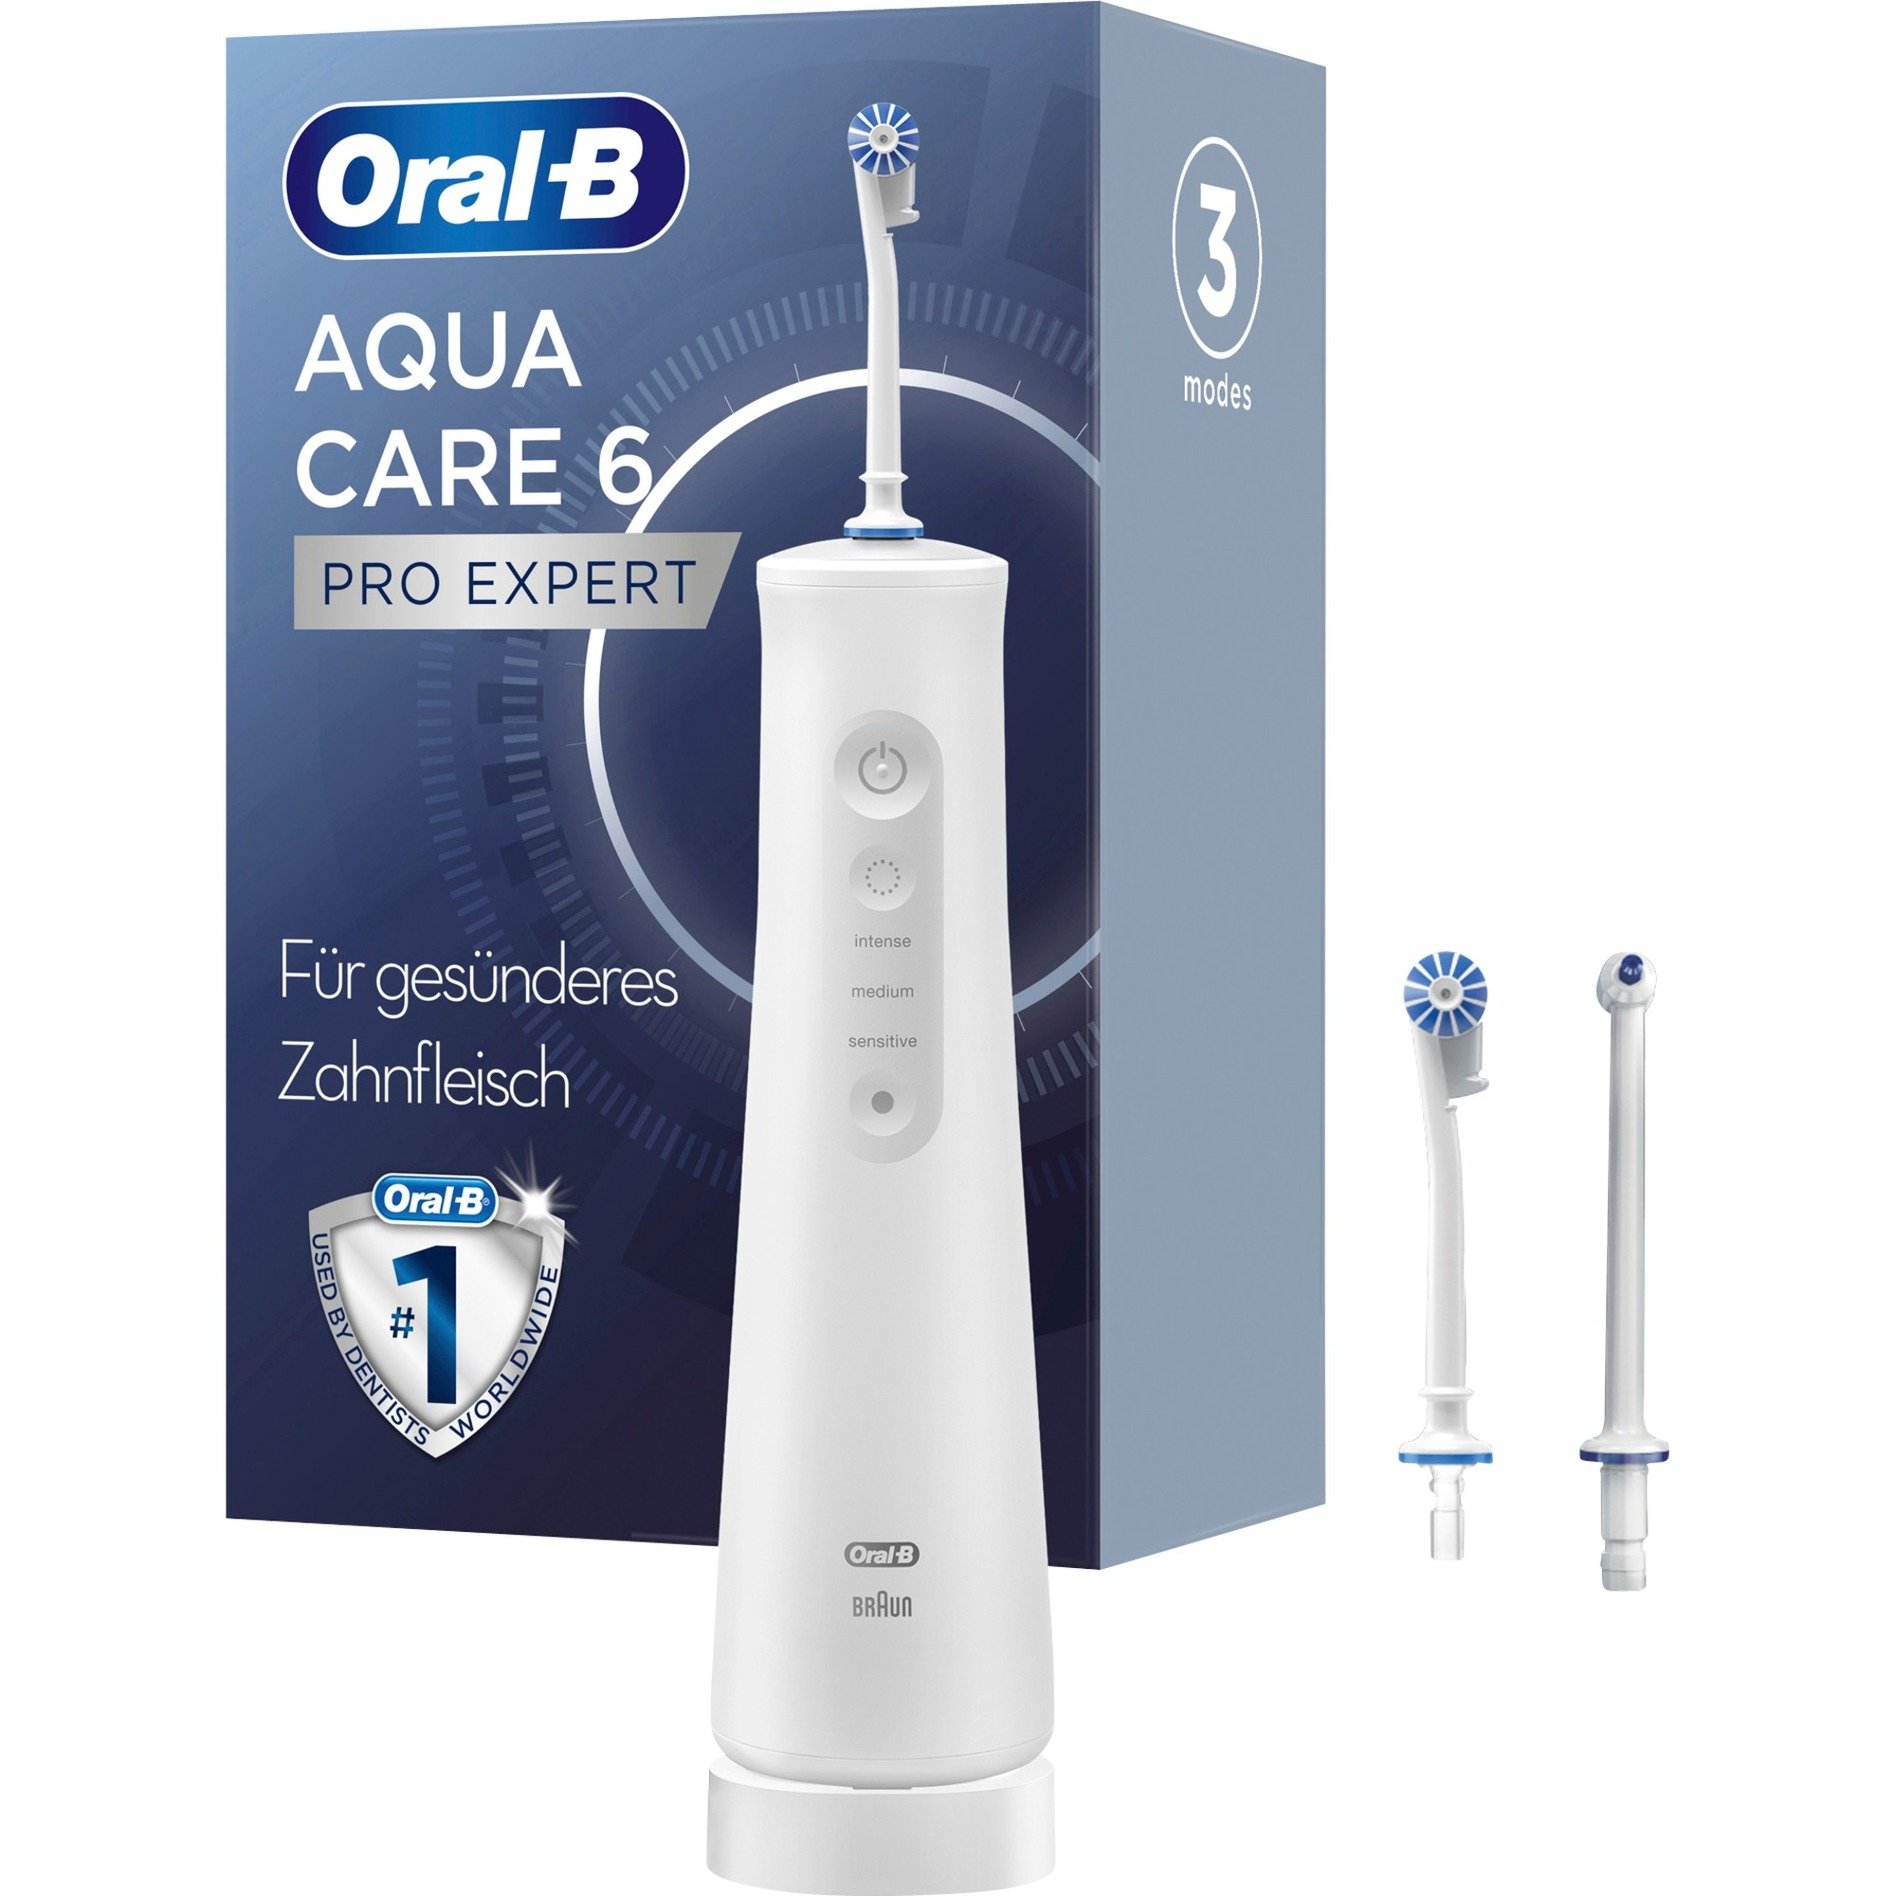 Oral-B AquaCare 6, Mundpflege von Braun